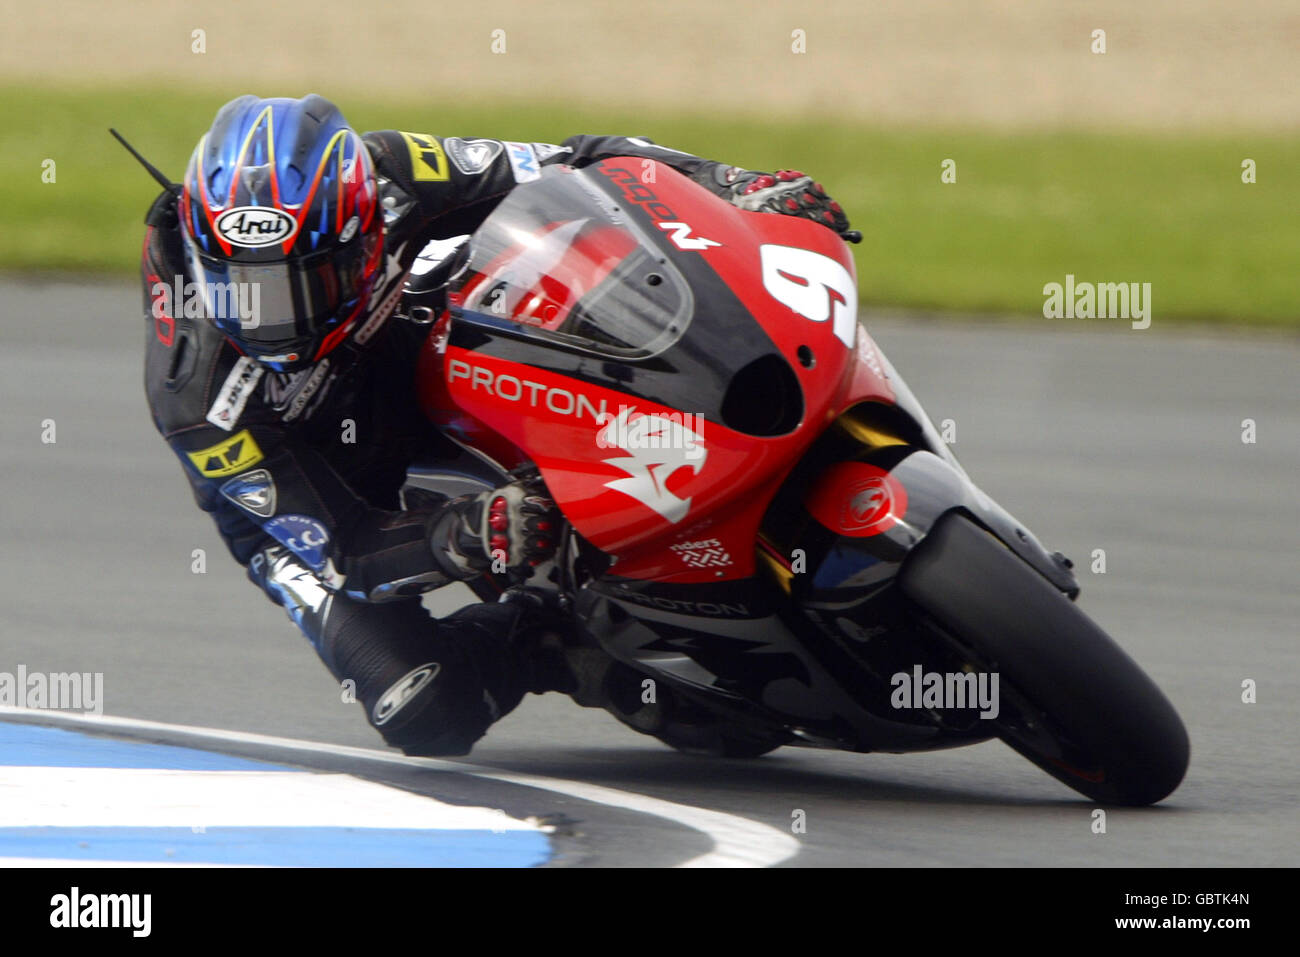 Motorradfahren - großer Preis von Großbritannien - Moto GP - Qualifikation. Nobuatsu Aoki in Aktion Stockfoto